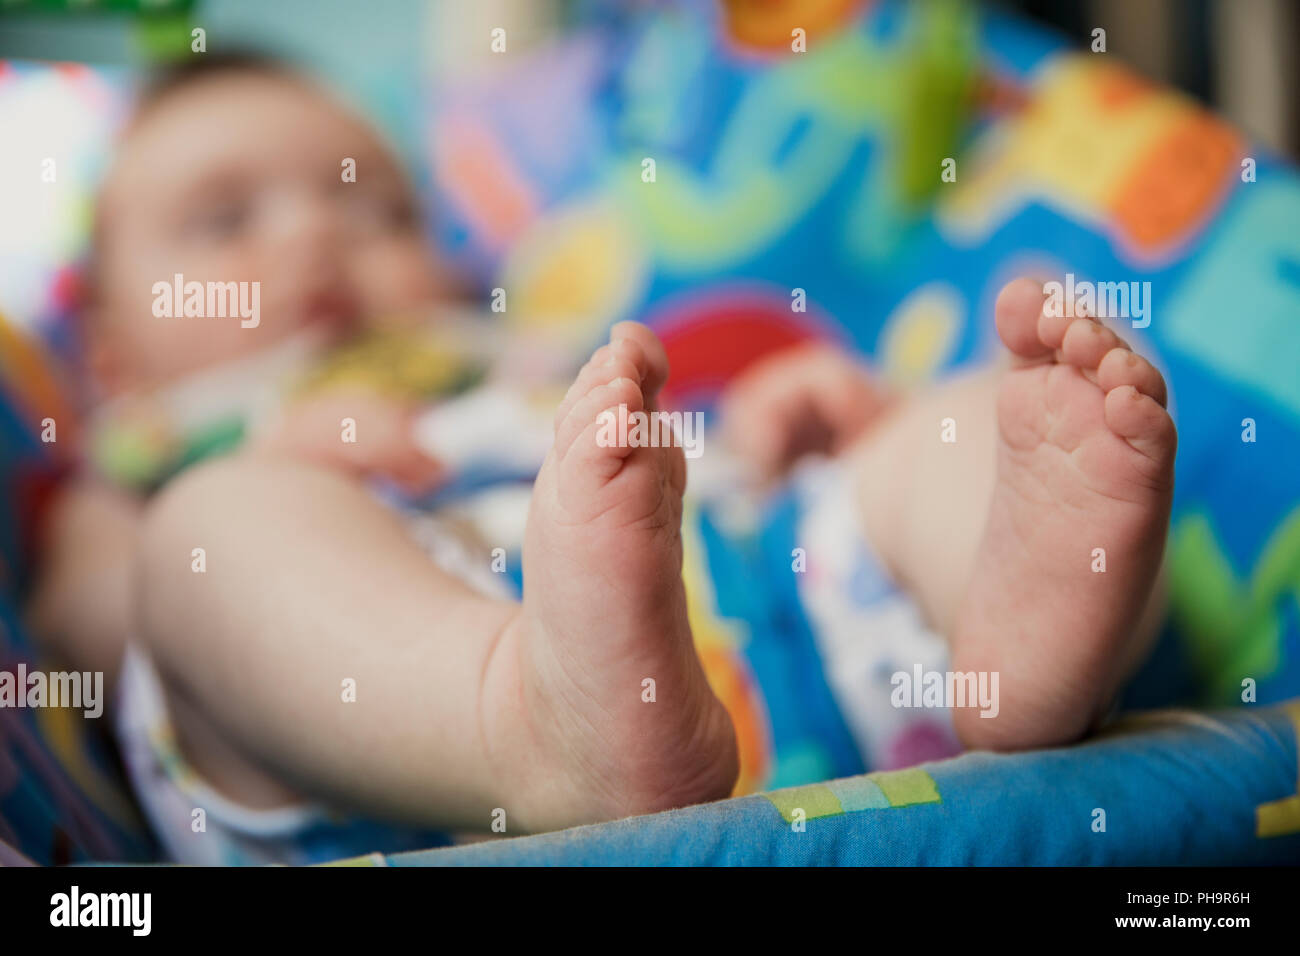 Bébé méconnaissable de détente dans un videur de bébé. Point sur le premier plan sur les pieds de bébés. Le fond de l'image est floue. Banque D'Images